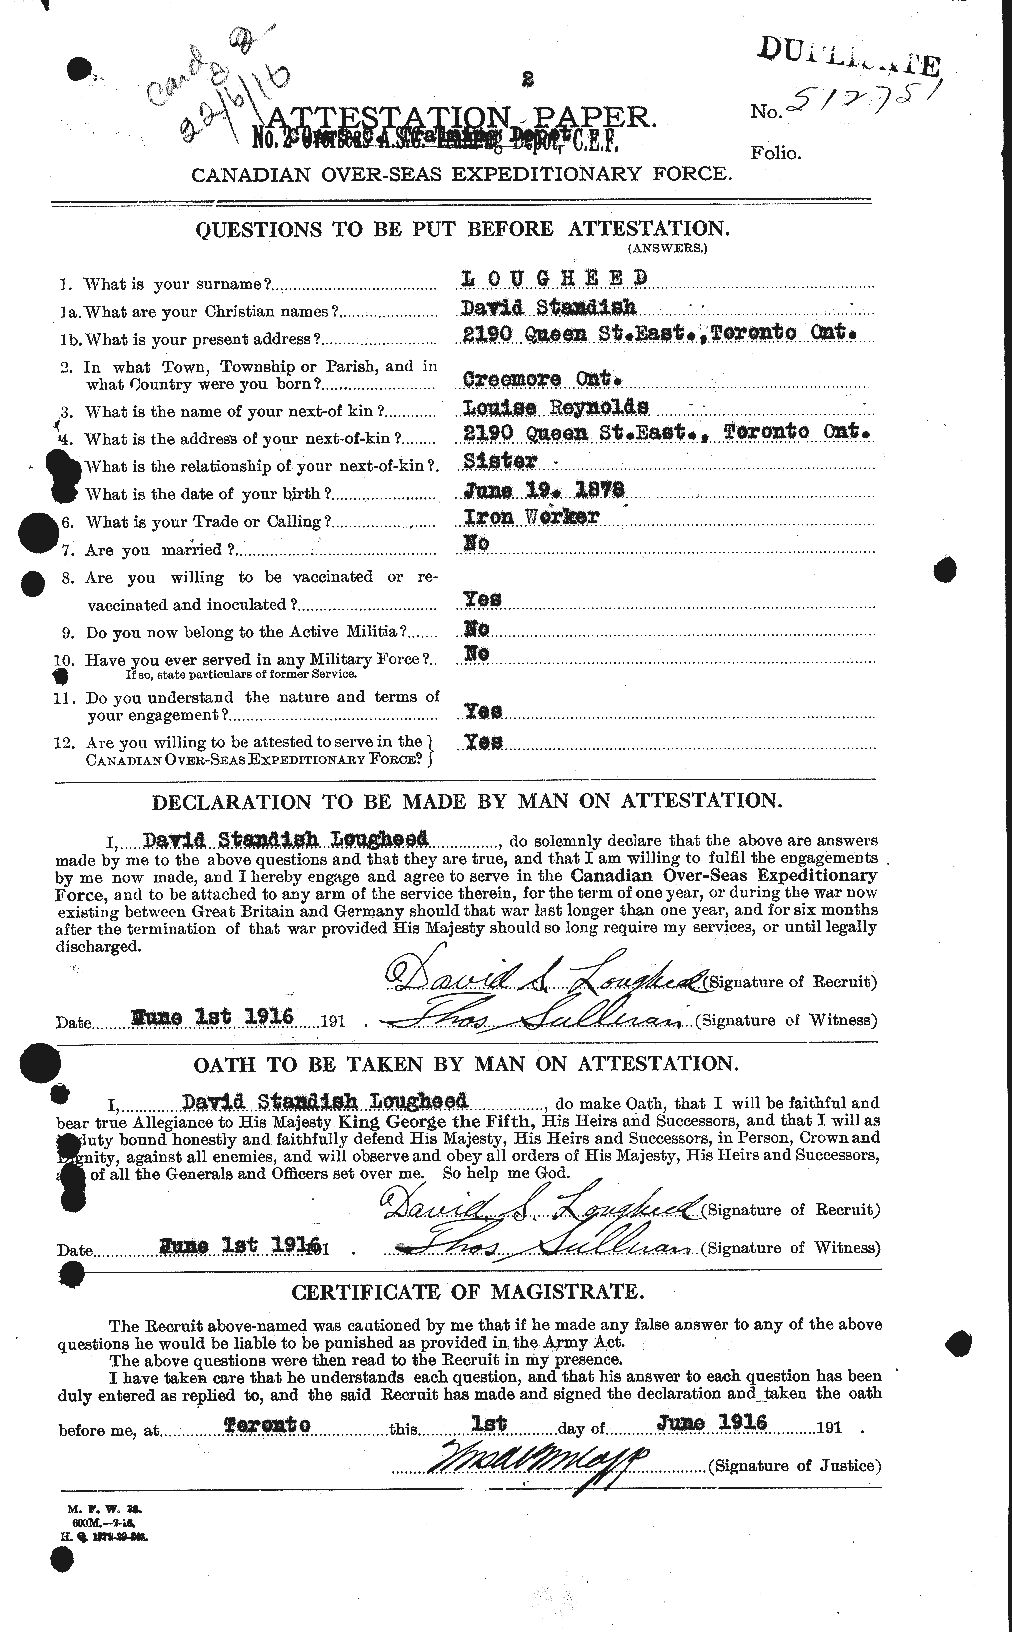 Dossiers du Personnel de la Première Guerre mondiale - CEC 470389a